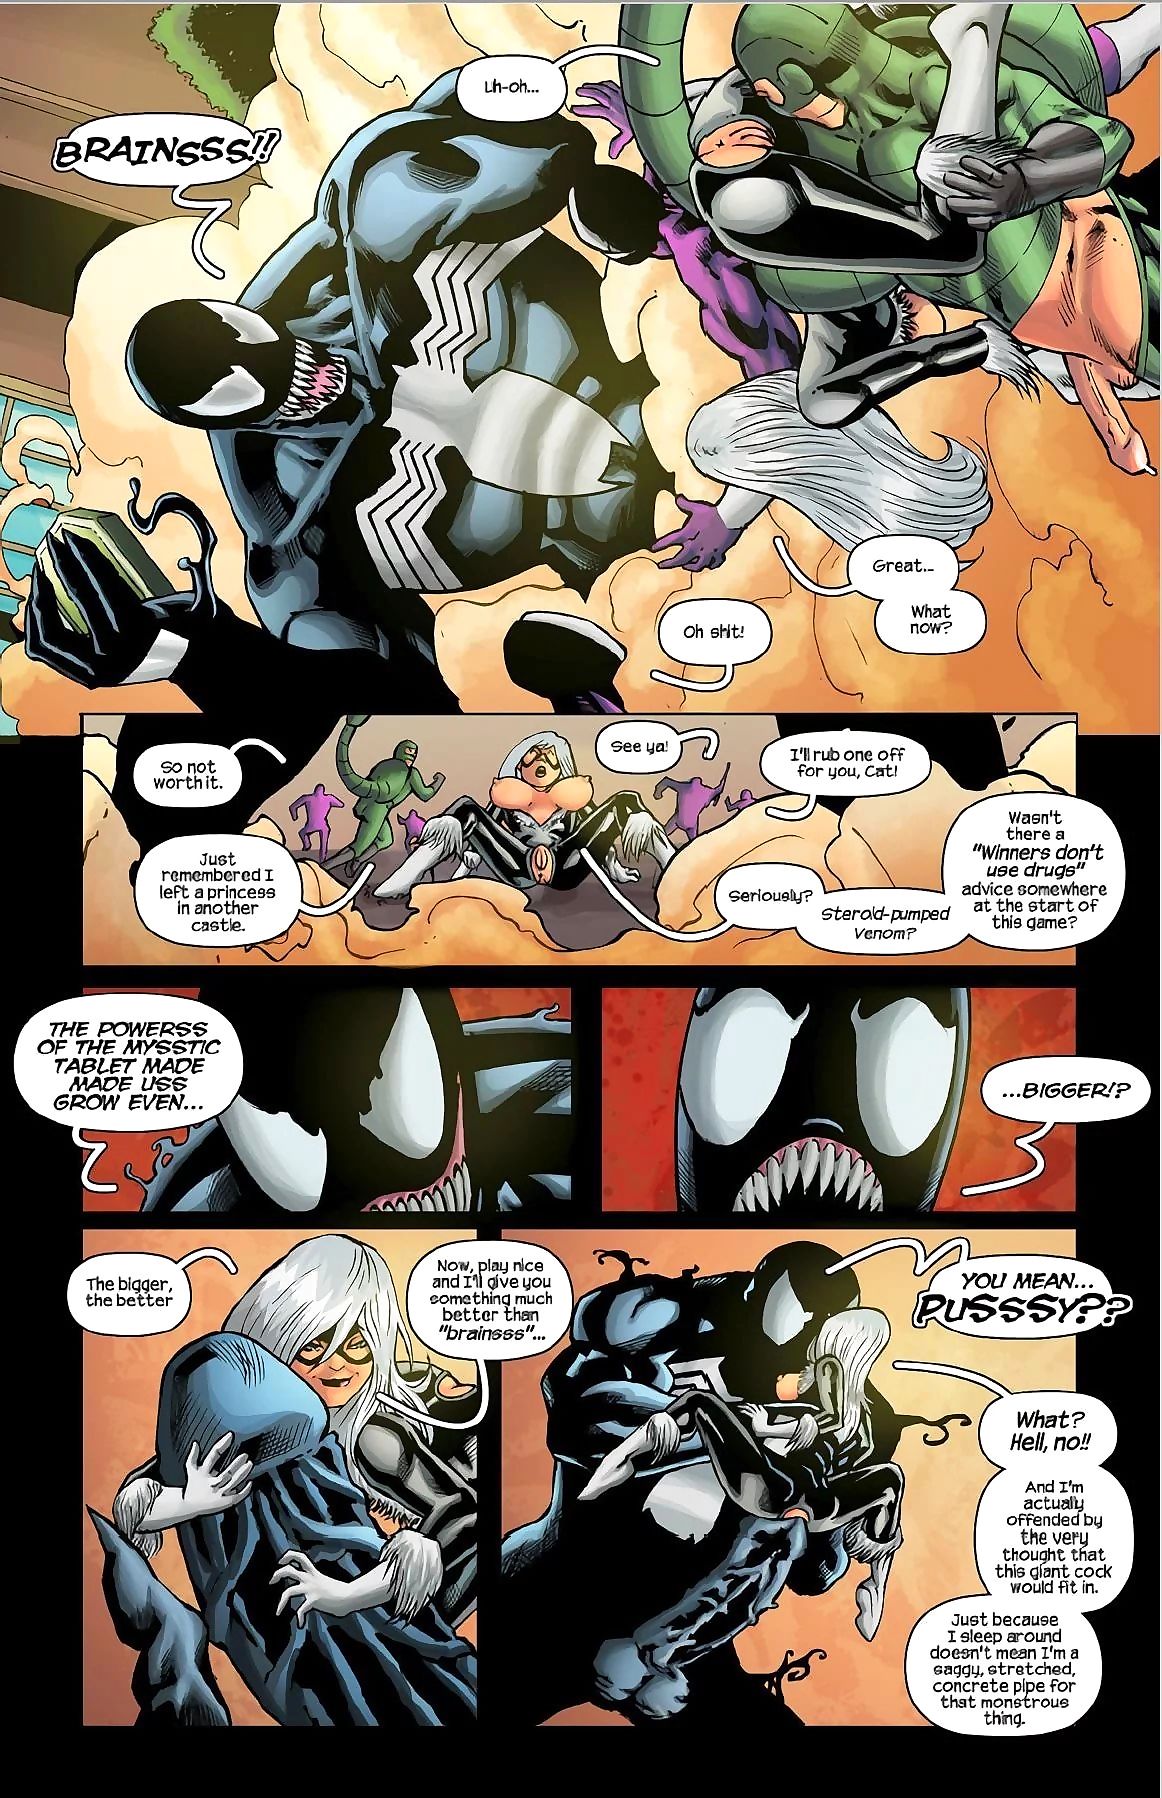 เทรซี่ scops spiderman, คน ’91 เกมอาเขต name เกมส์ page 1